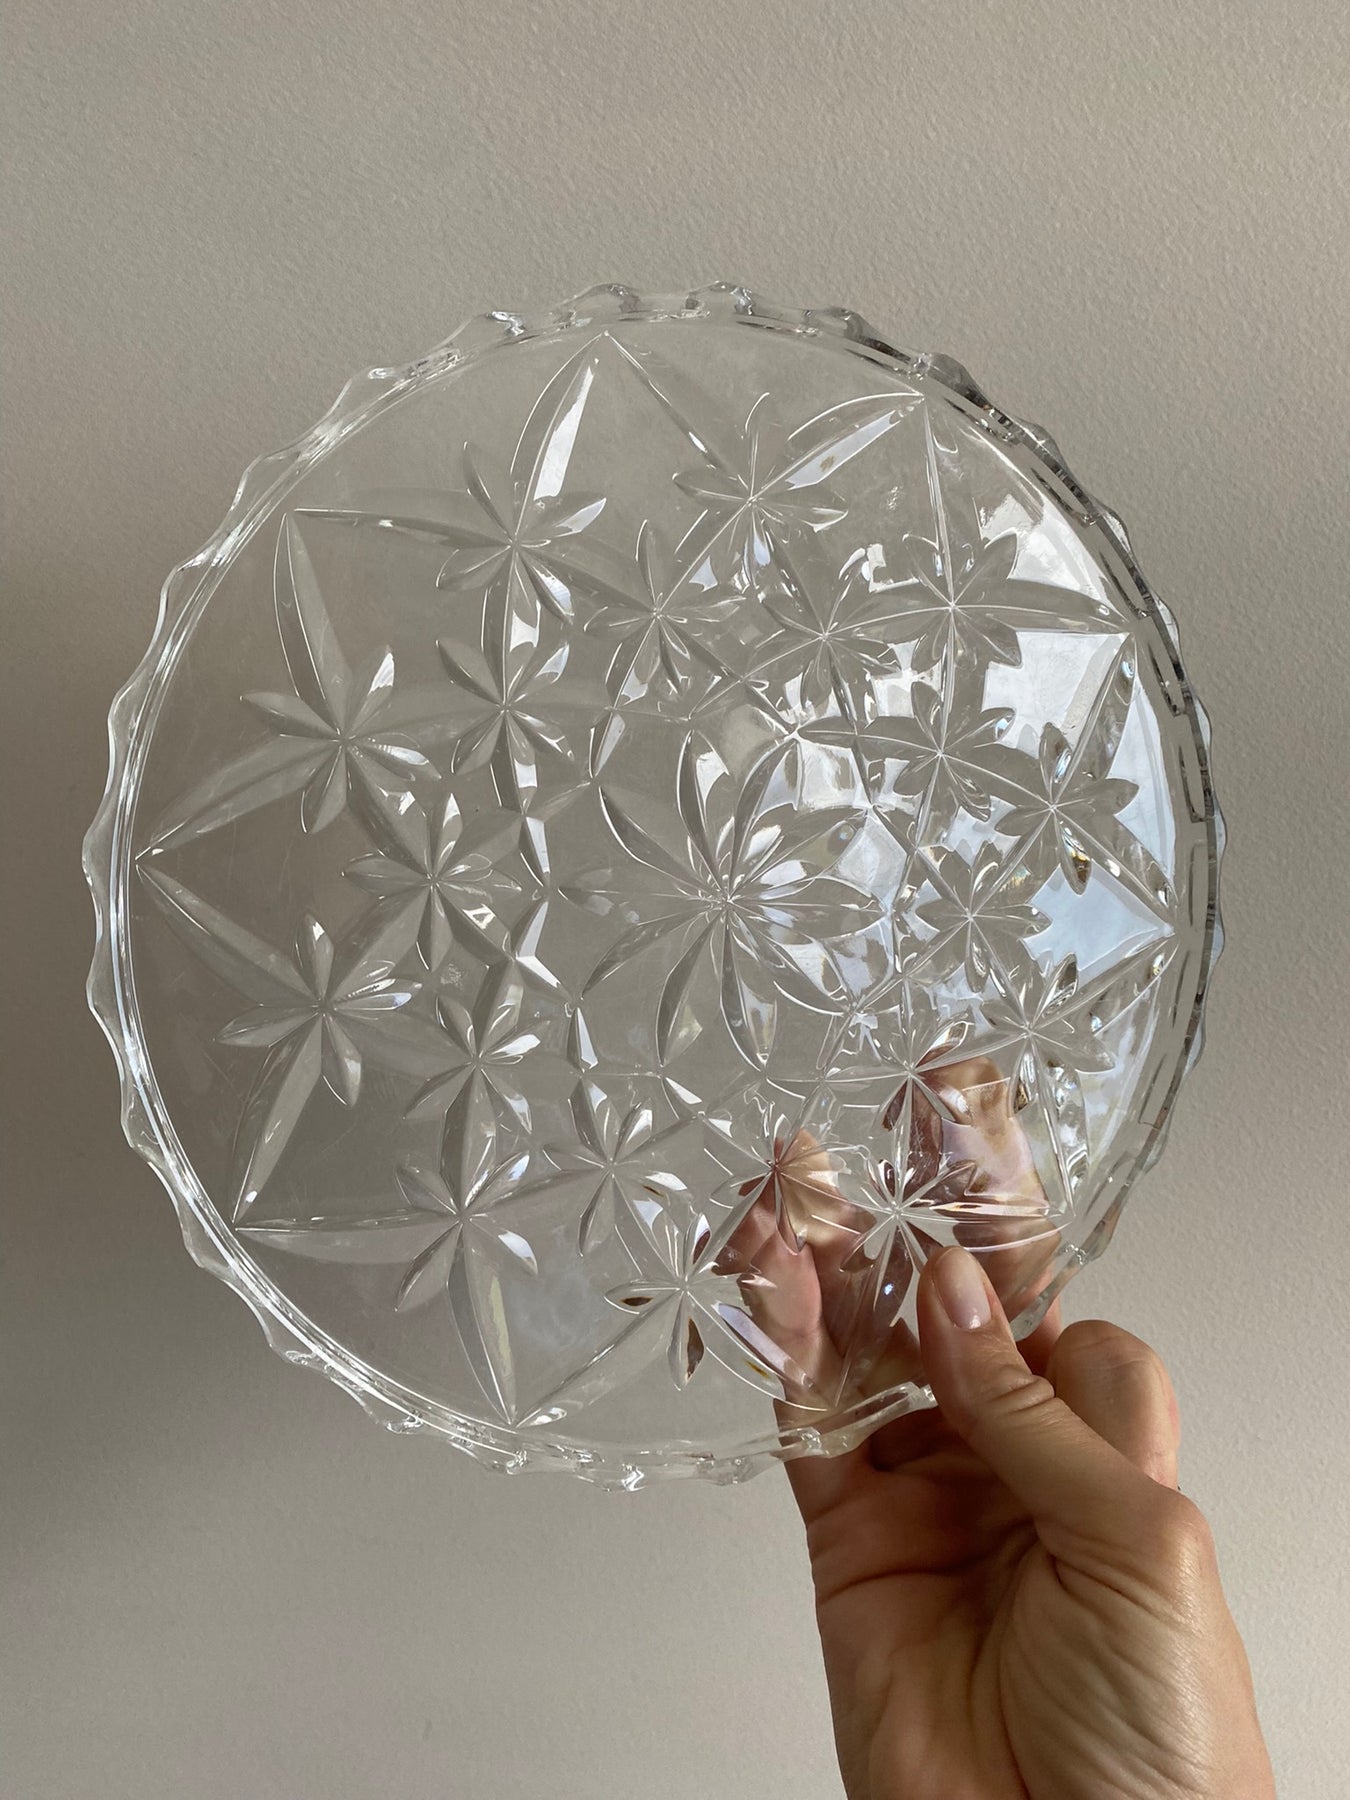 DIFFUSION 362358 Assiette ronde transparente ciselée - Ø19,5 x H.1,5 cm